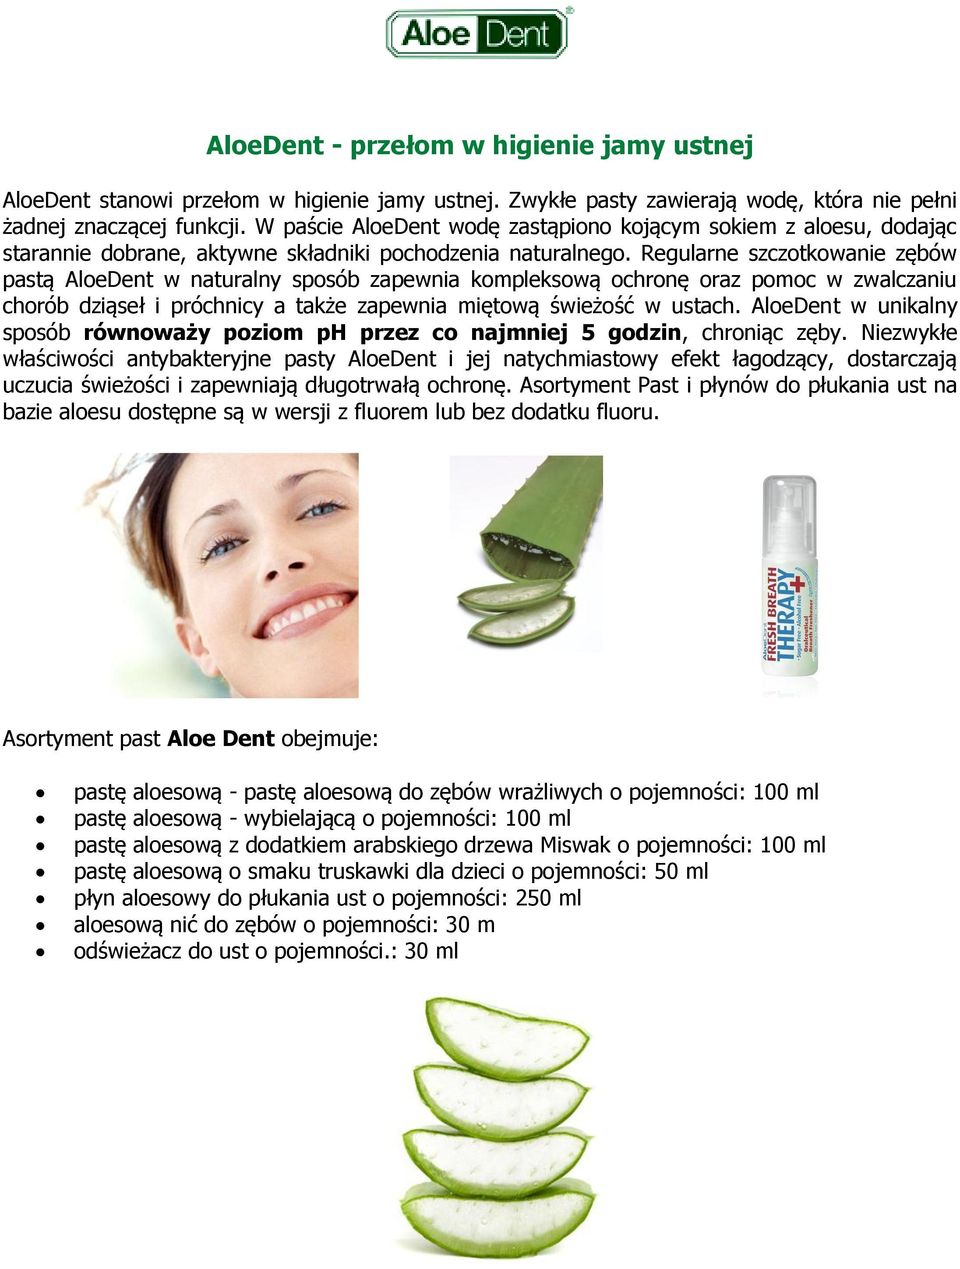 Regularne szczotkowanie zębów pastą AloeDent w naturalny sposób zapewnia kompleksową ochronę oraz pomoc w zwalczaniu chorób dziąseł i próchnicy a także zapewnia miętową świeżość w ustach.